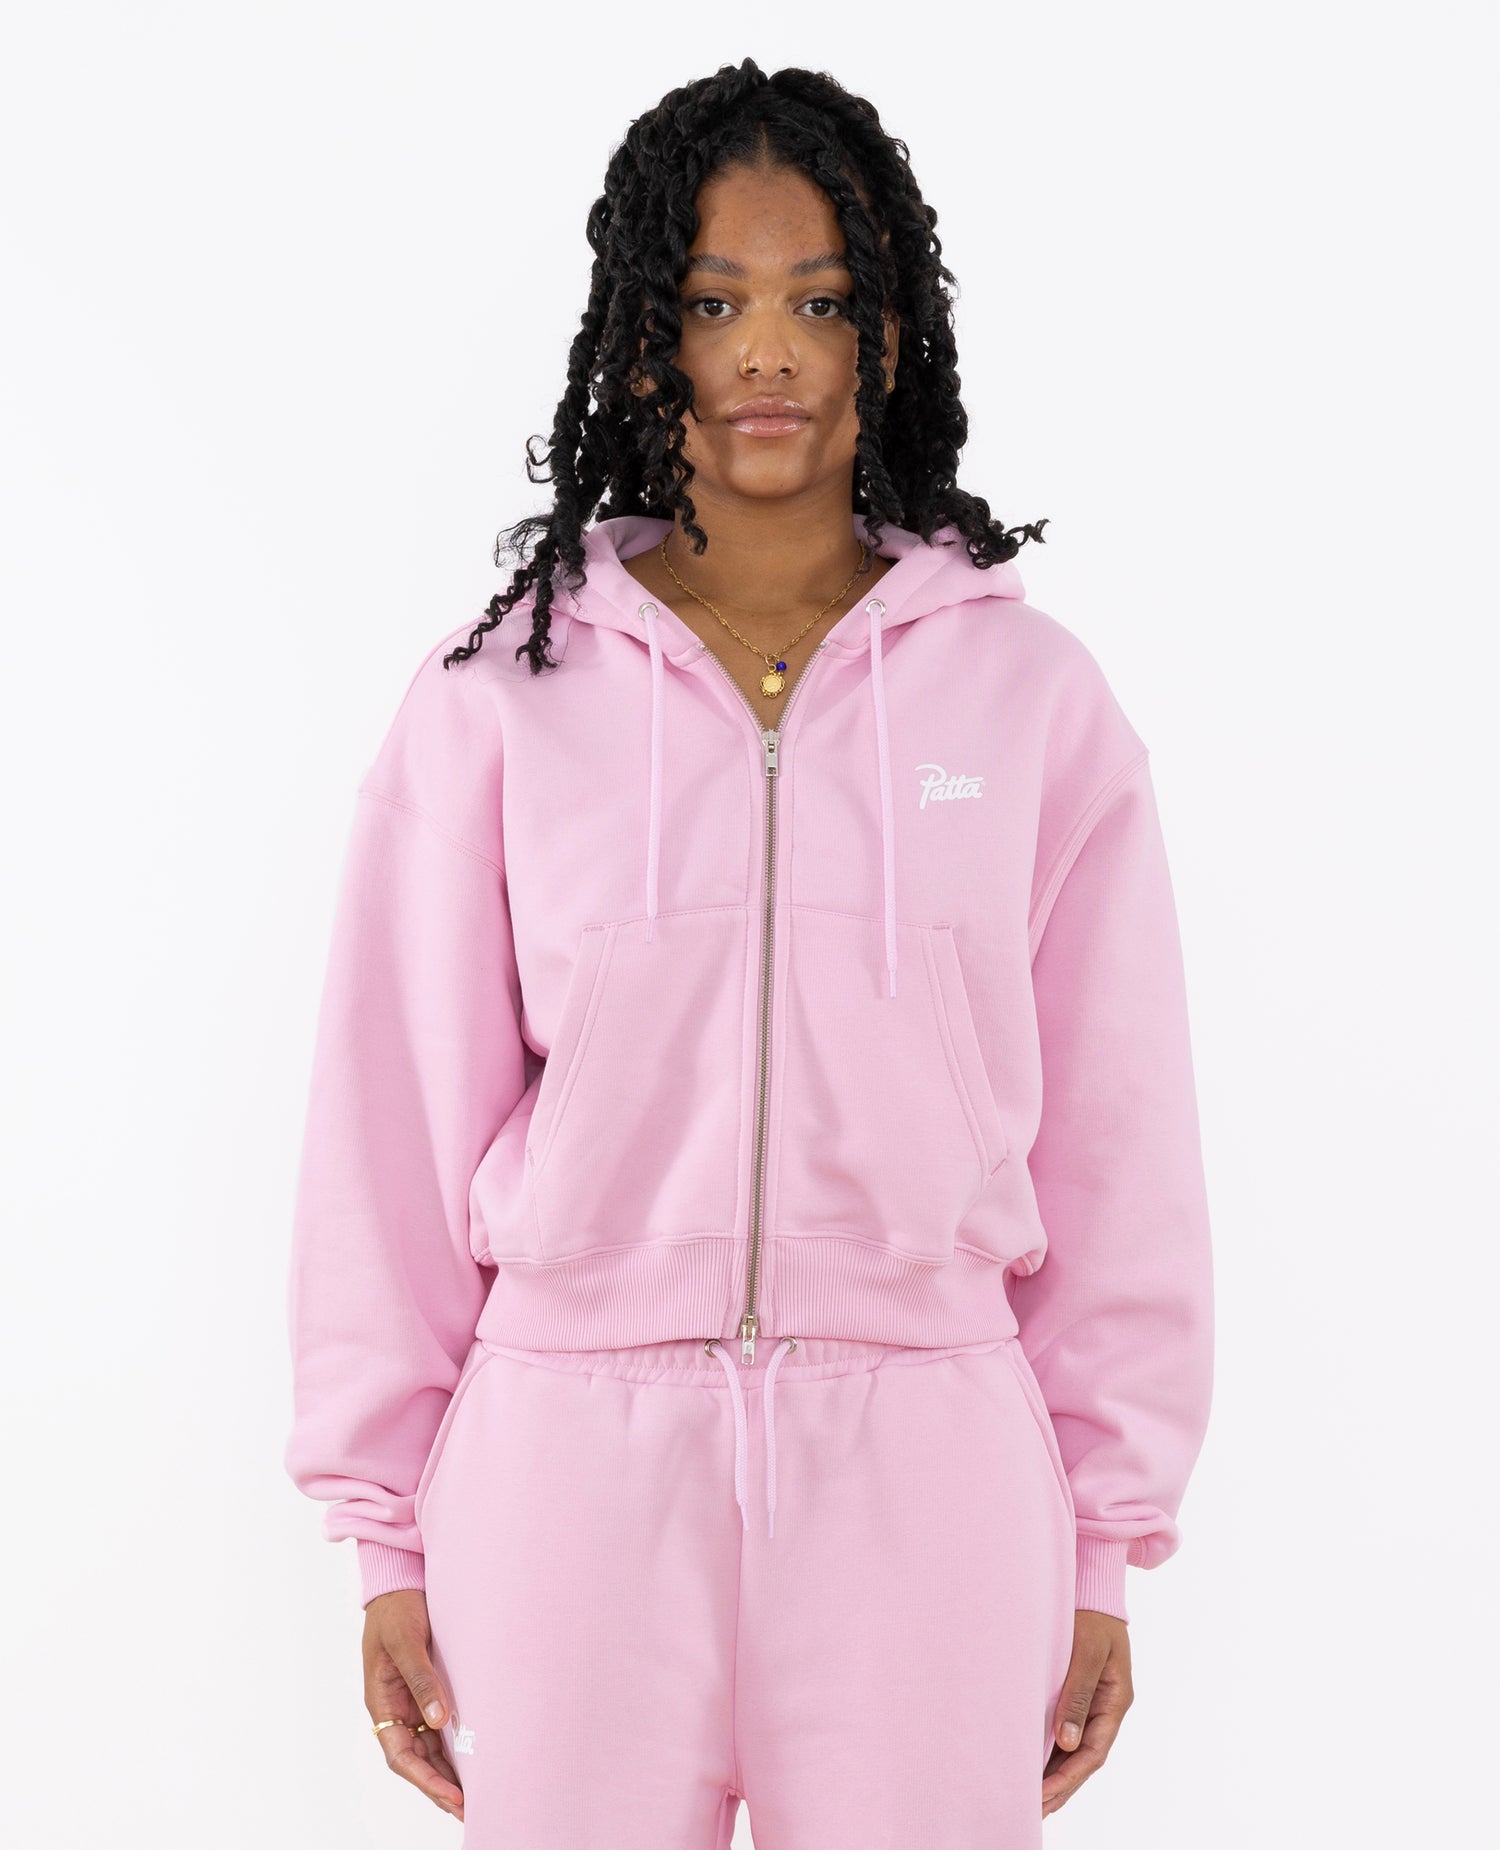 Maglione con cappuccio e zip corto Patta Femme Basic (rosa culla)